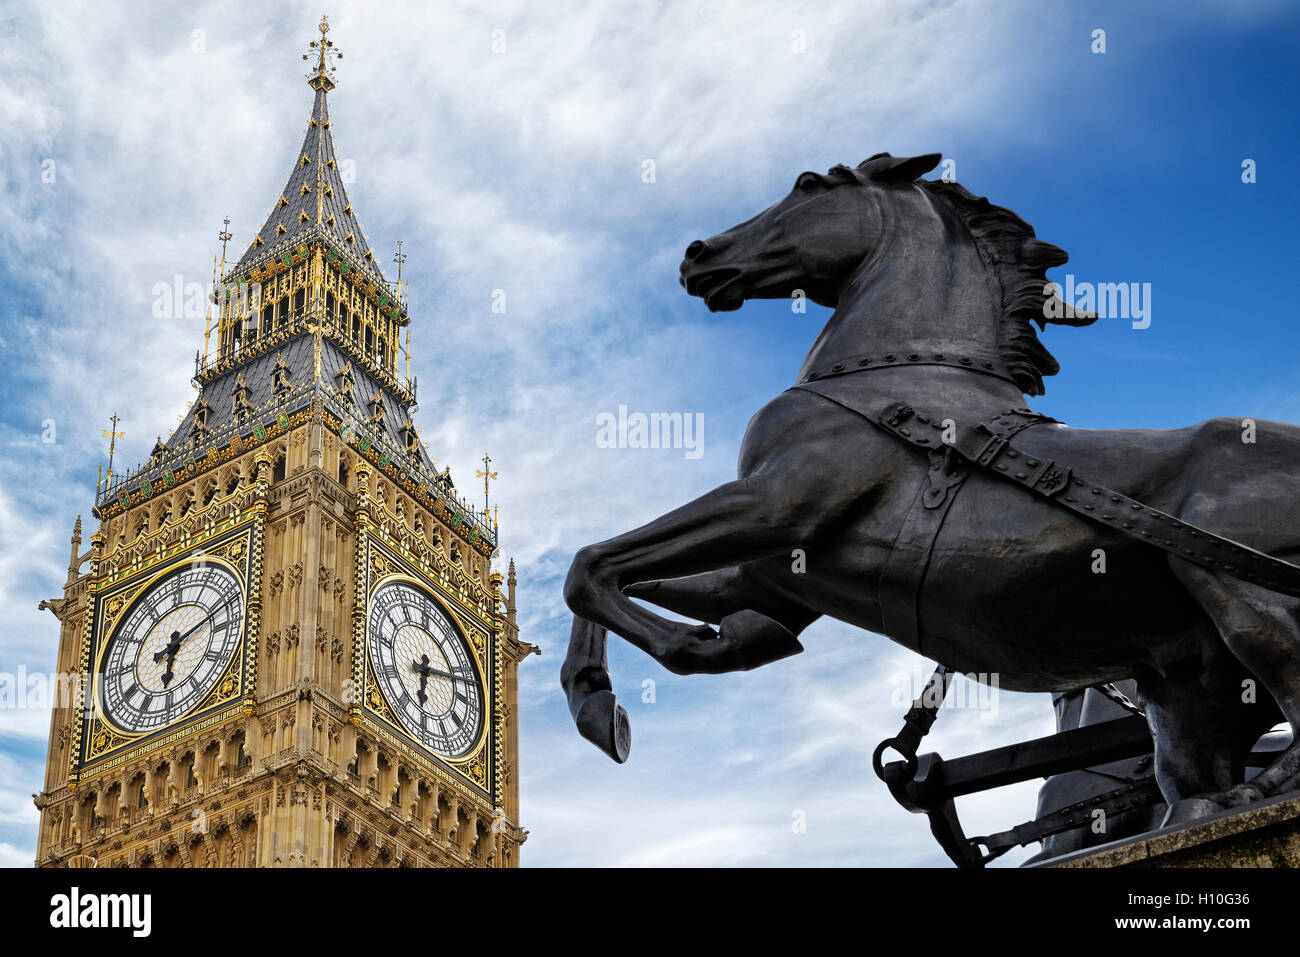 Statue de Boudicca et Big Ben, London, UK. Banque D'Images